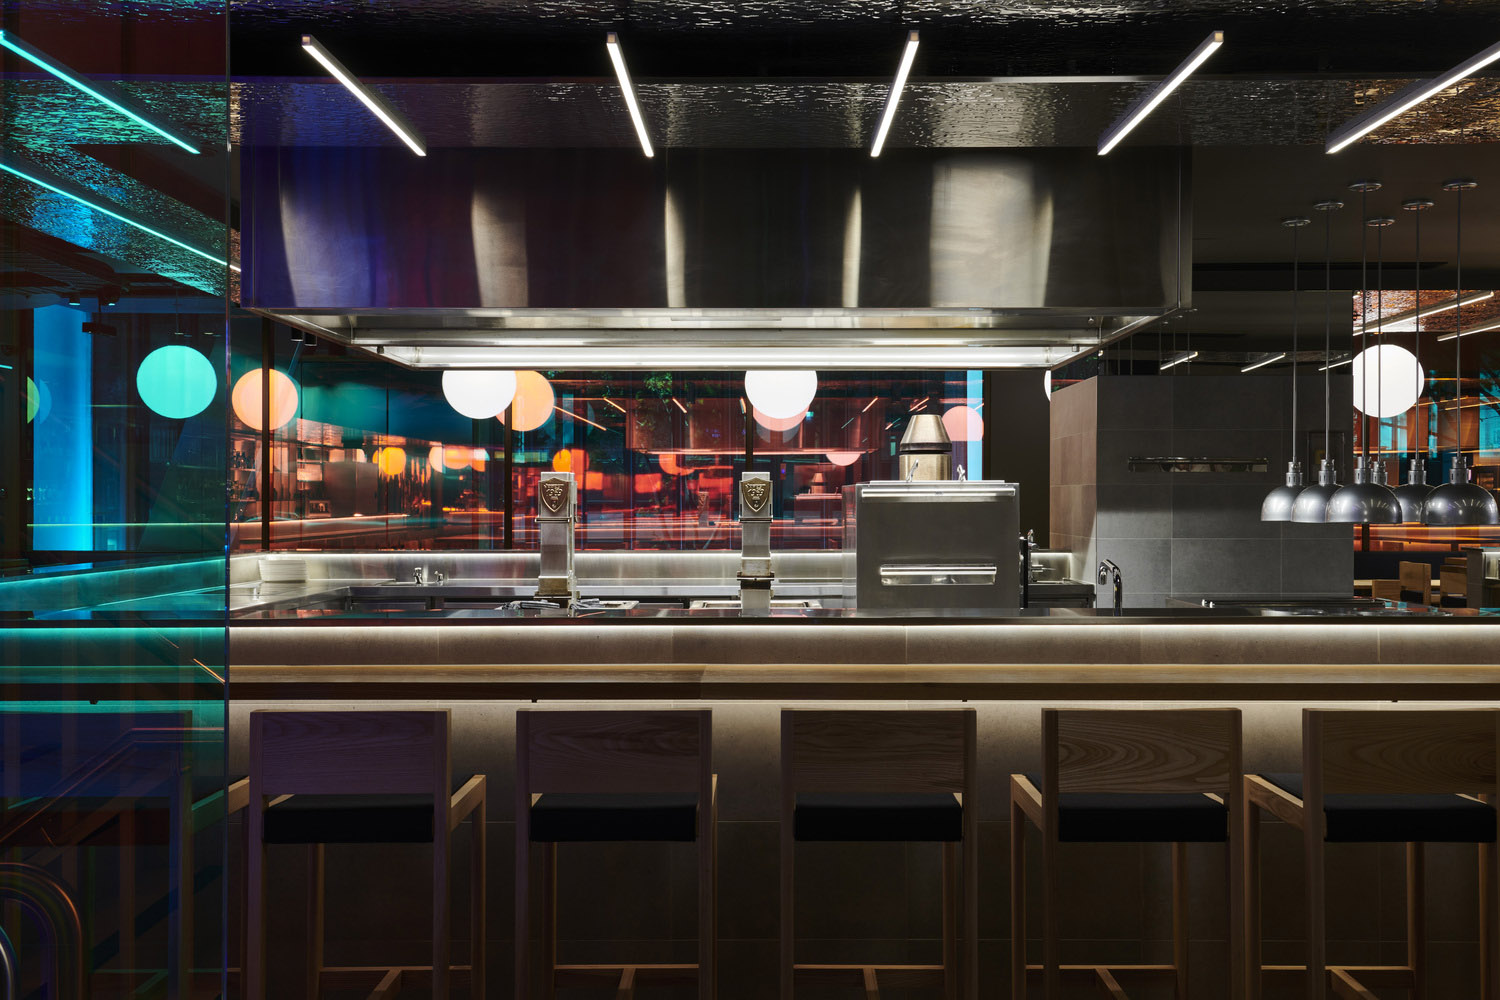 Russell & George,墨尔本,餐厅设计,居酒屋设计案例,国外酒吧设计,烤物餐厅,685㎡,居酒屋设计,日式烤物餐厅